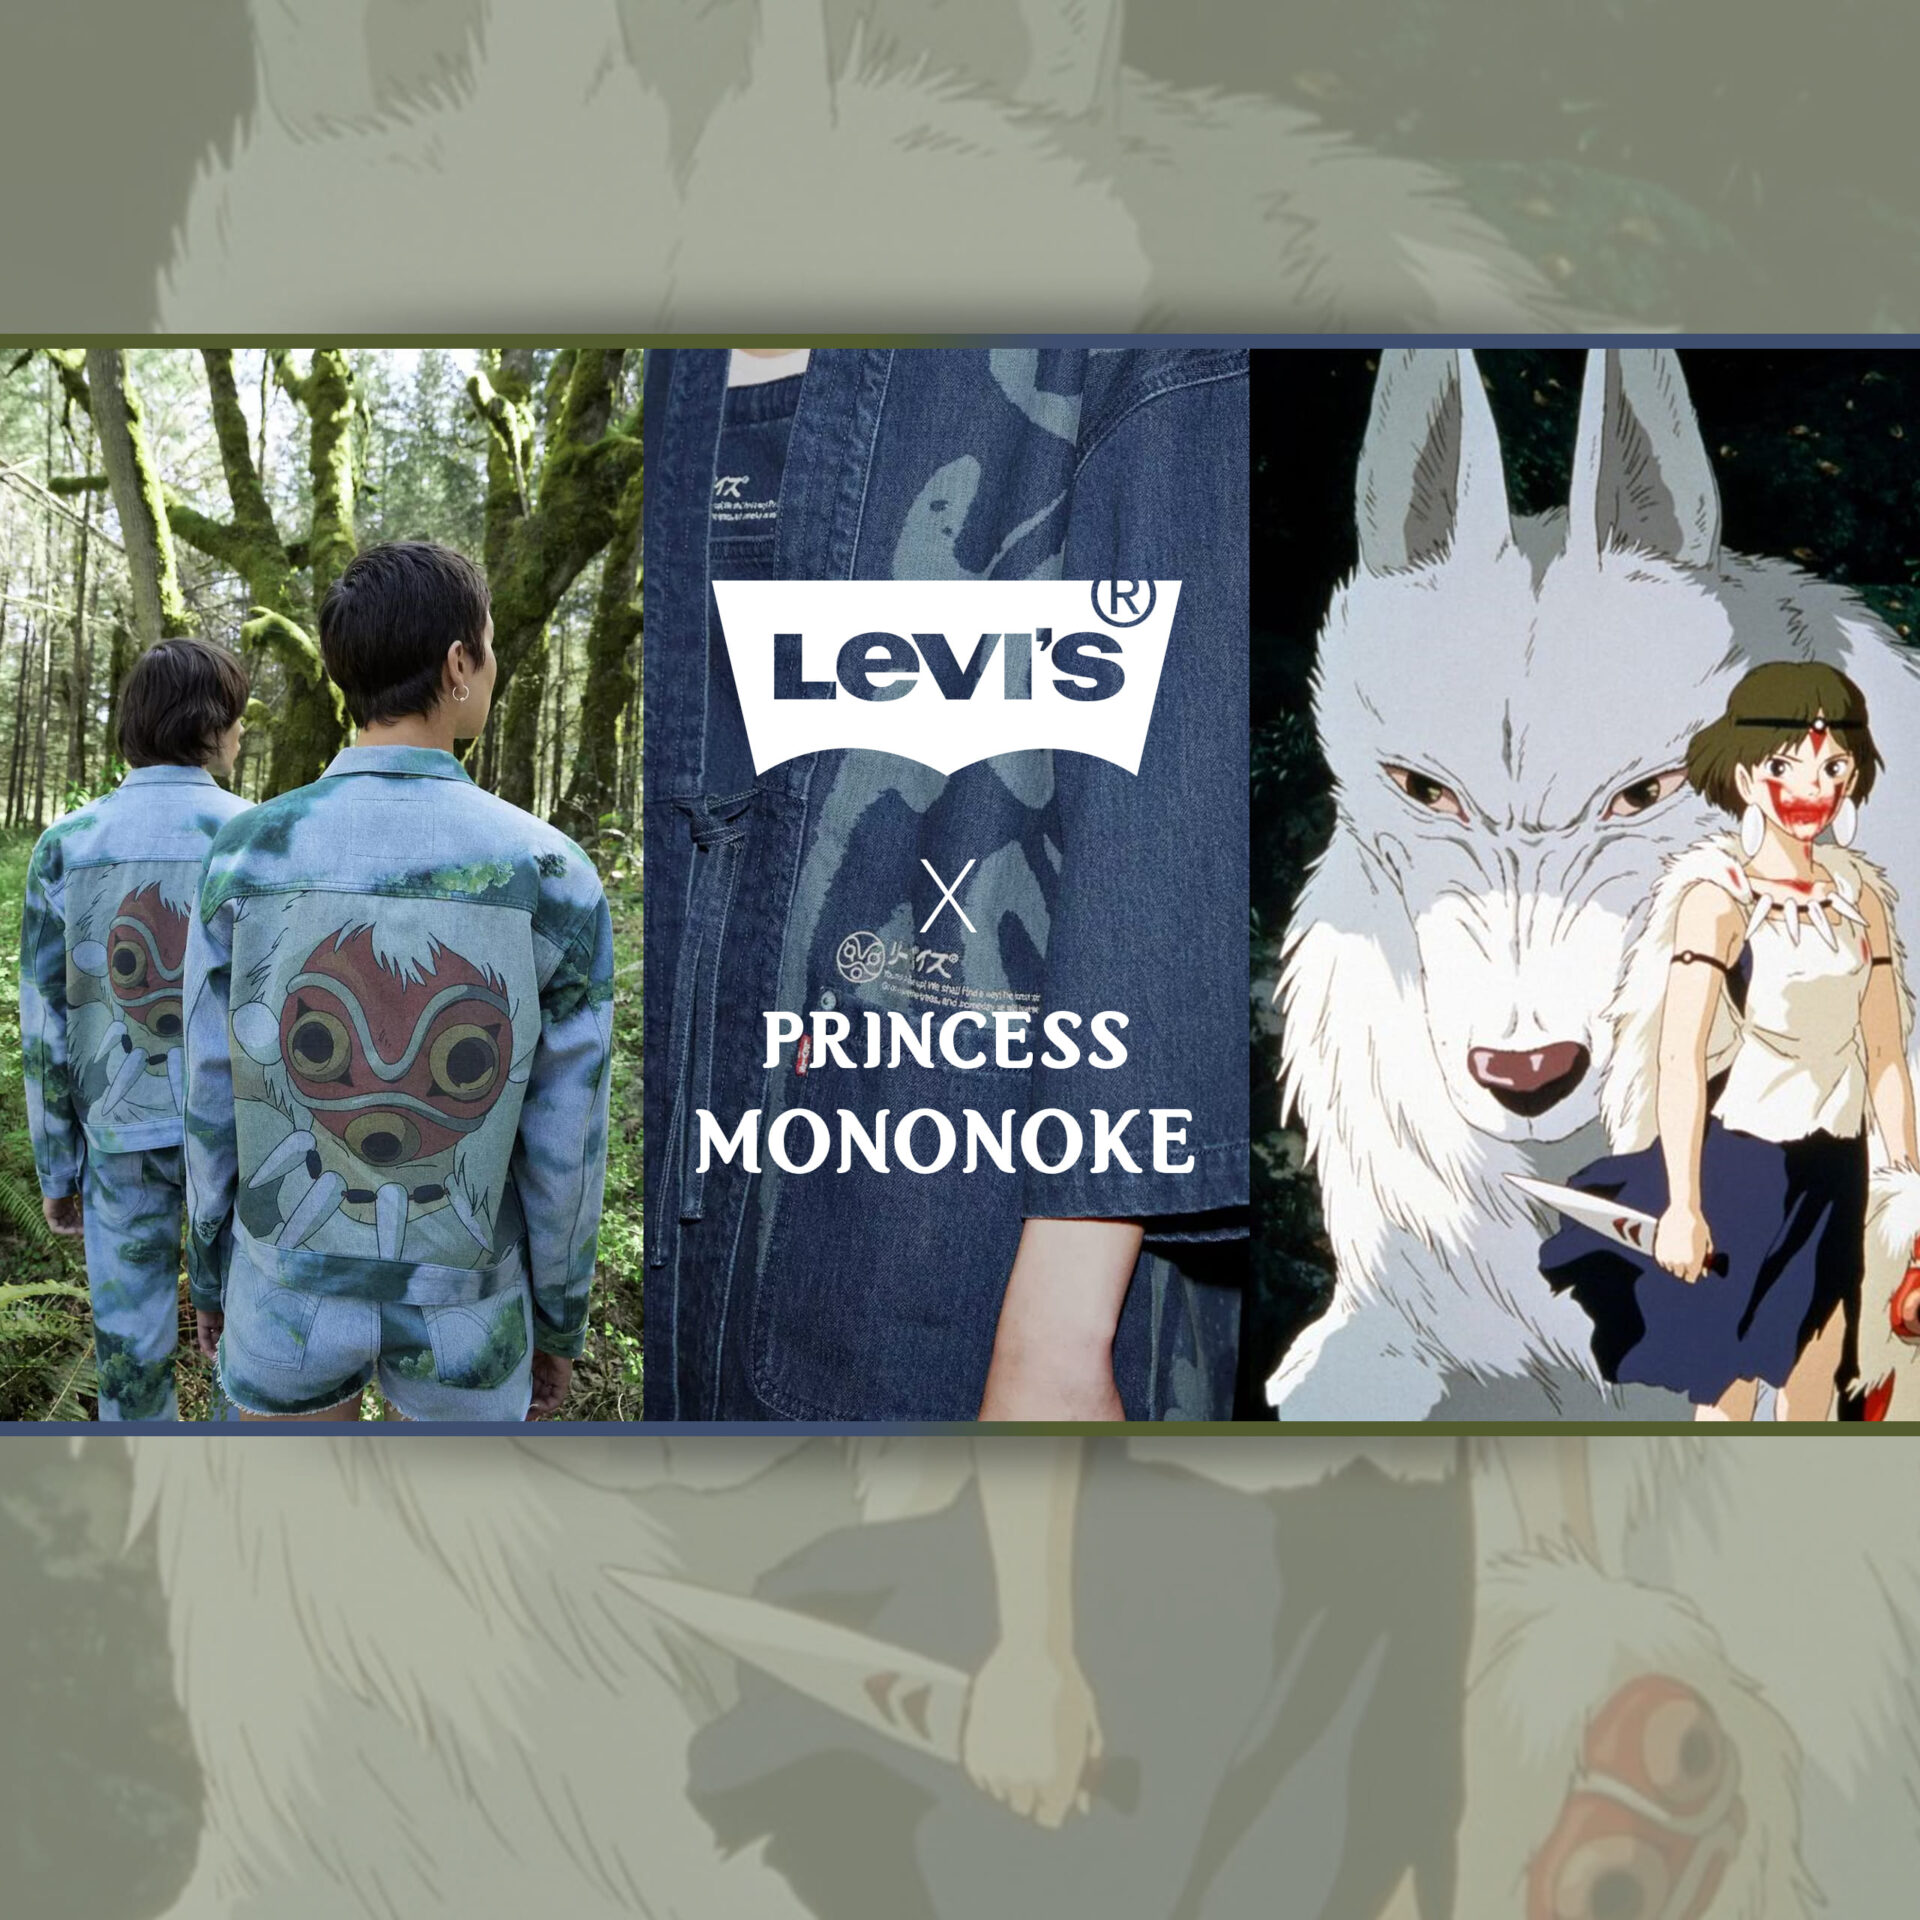 Levi Strauss annuncia una nuova linea di abbigliamento ispirata a Princess  Mononoke - Animaku